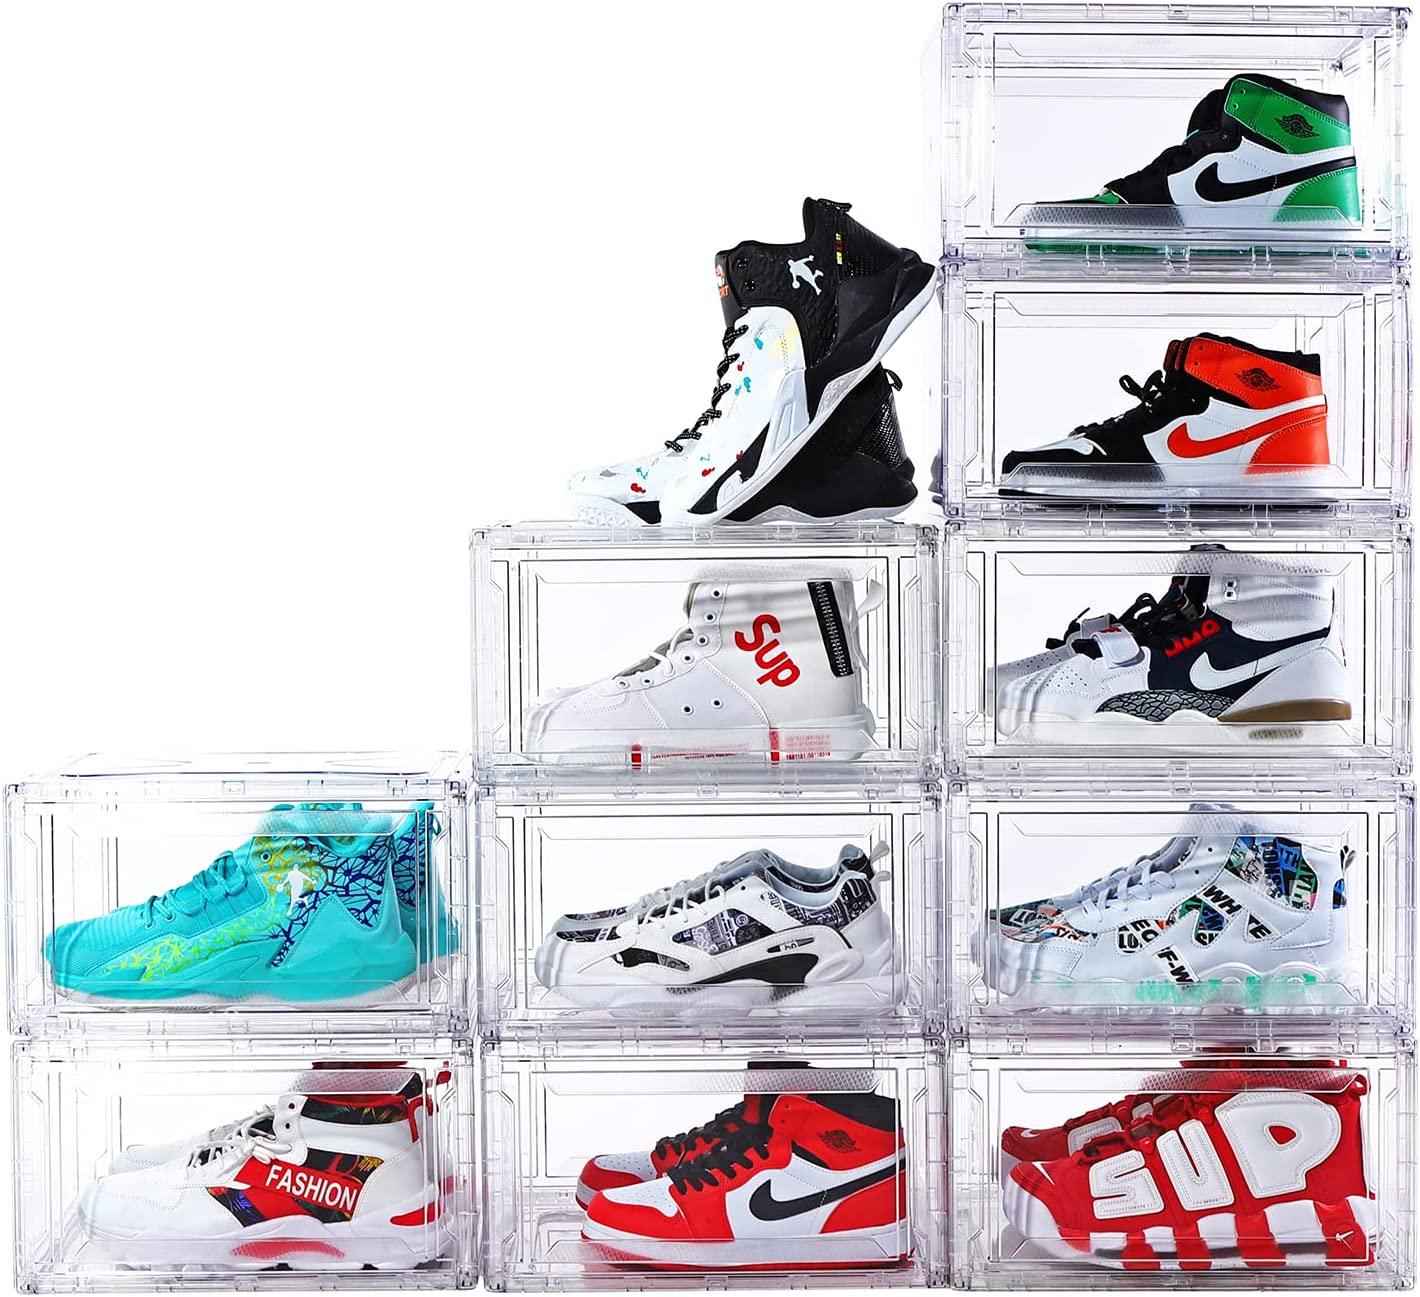 Beli  Kotak sepatu,Kotak sepatu Harga,Kotak sepatu Merek,Kotak sepatu Produsen,Kotak sepatu Quotes,Kotak sepatu Perusahaan,